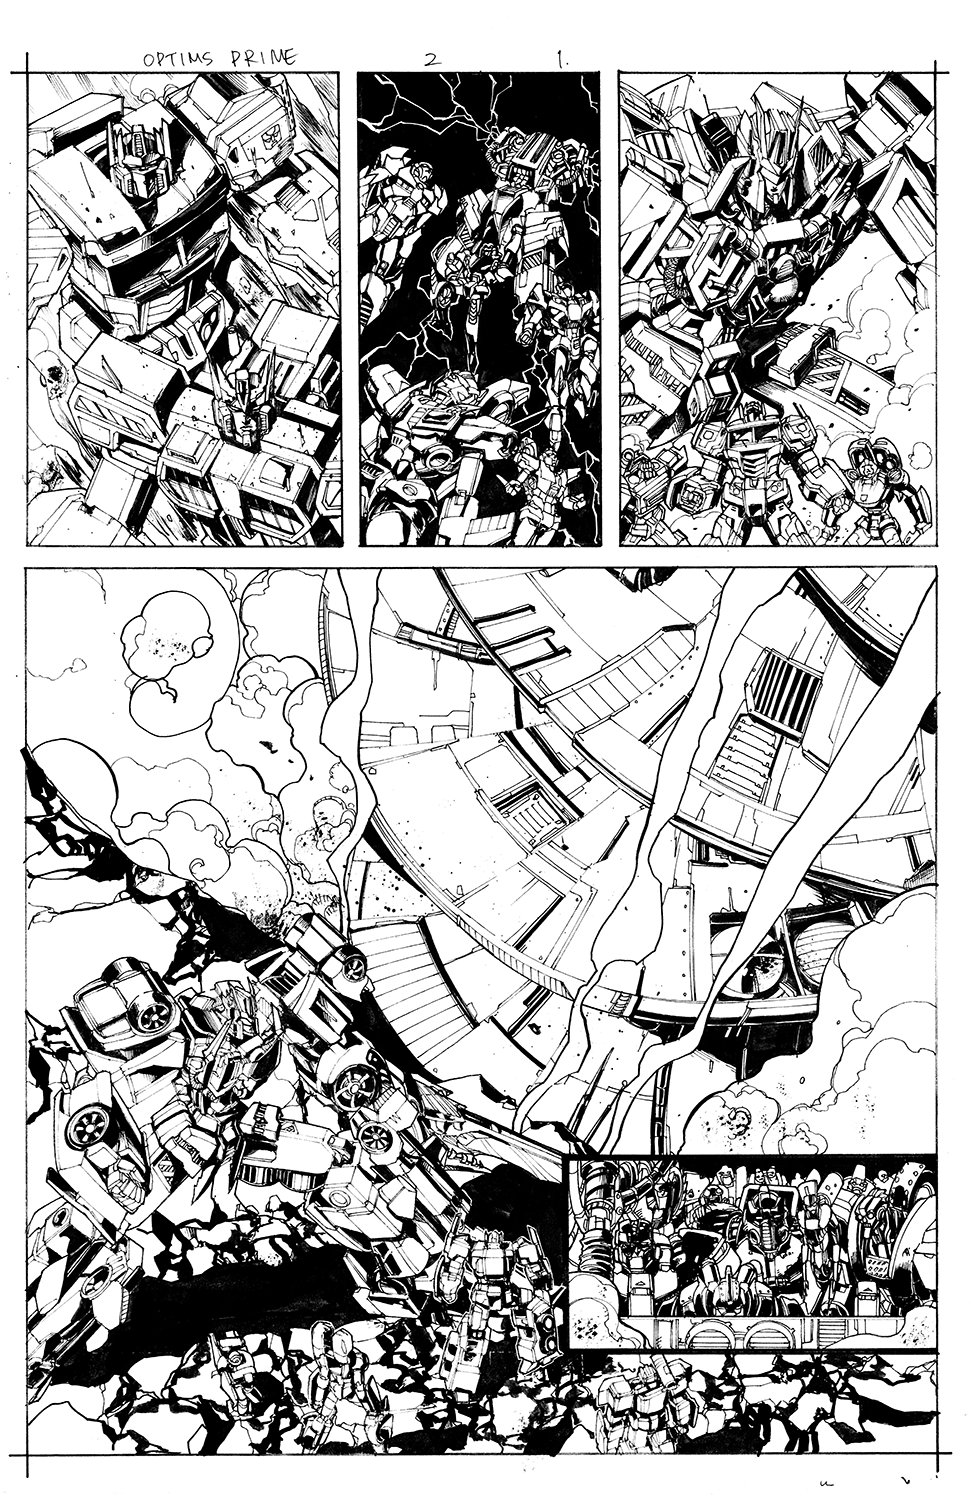 Optimus Prime #2 Page 01